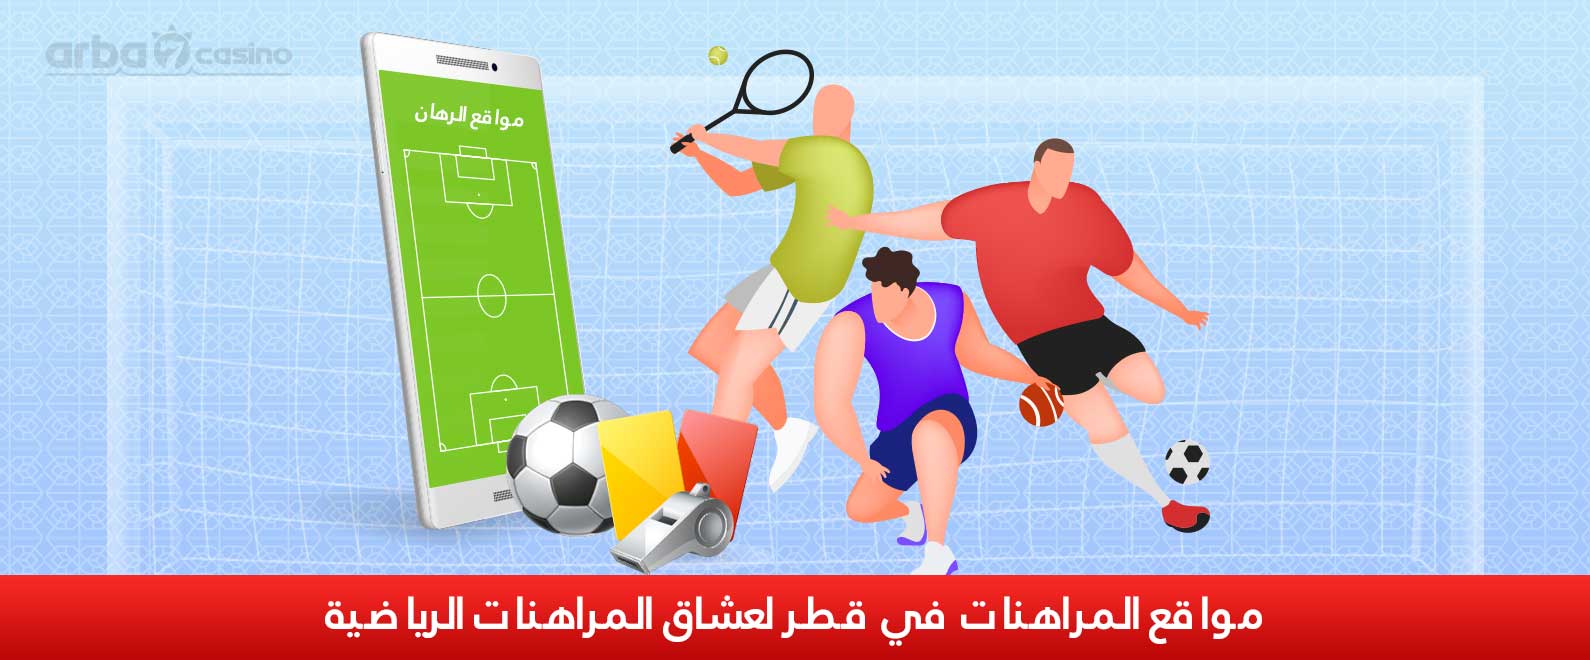 المراهنات الرياضية في قطر